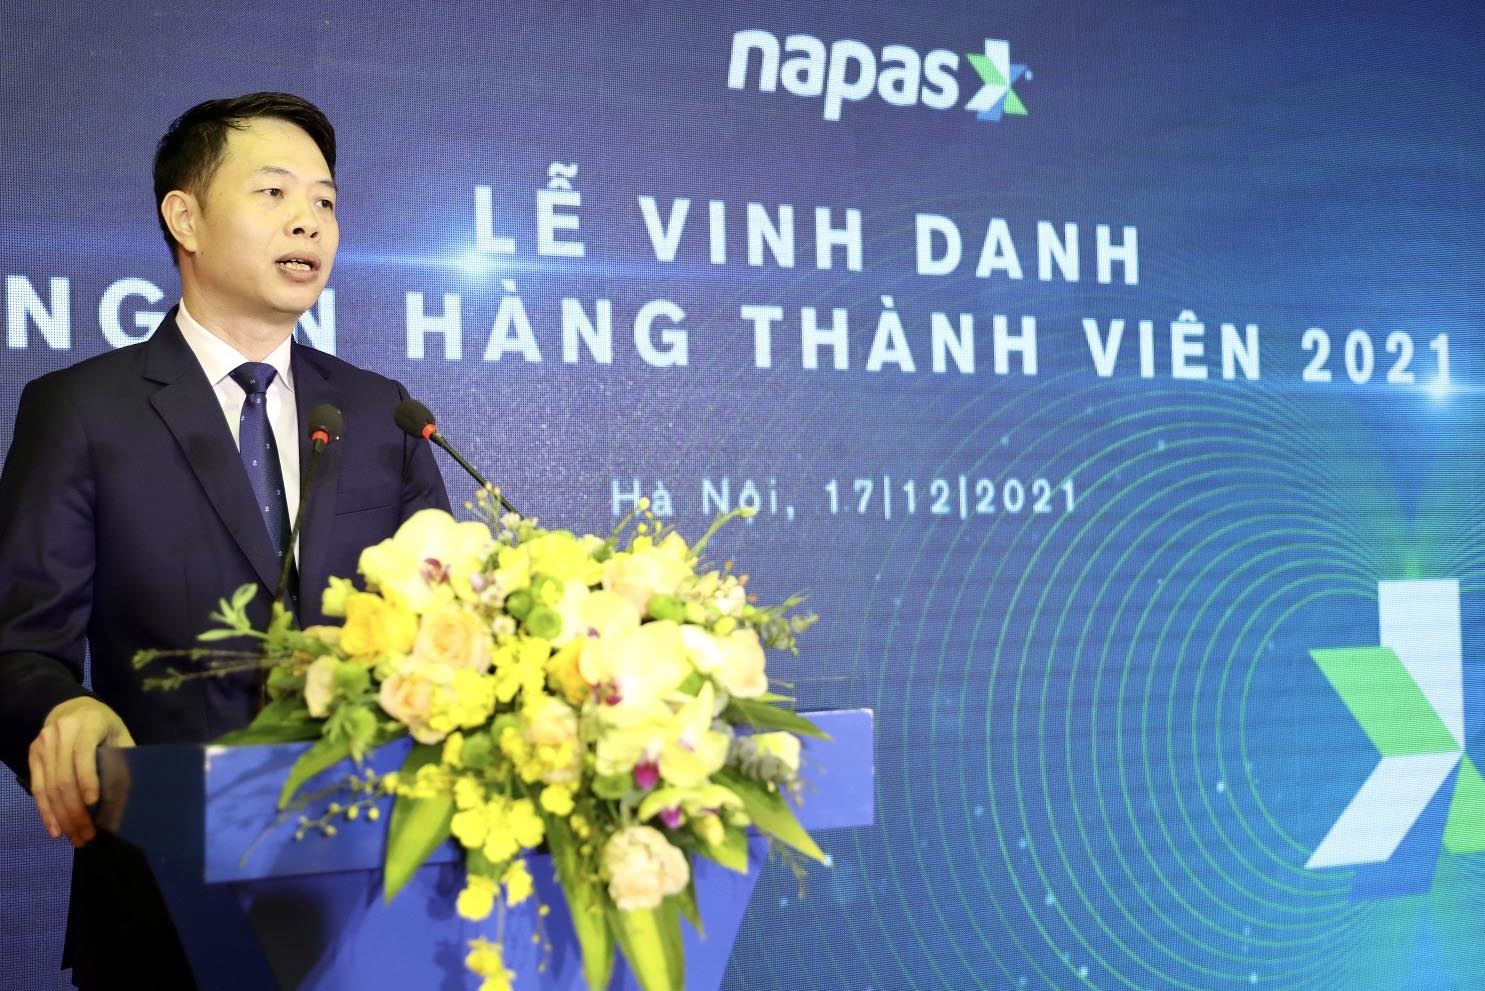 Chủ tịch Napas Nguyễn Quang Hưng phát biểu tại Lễ vinh danh